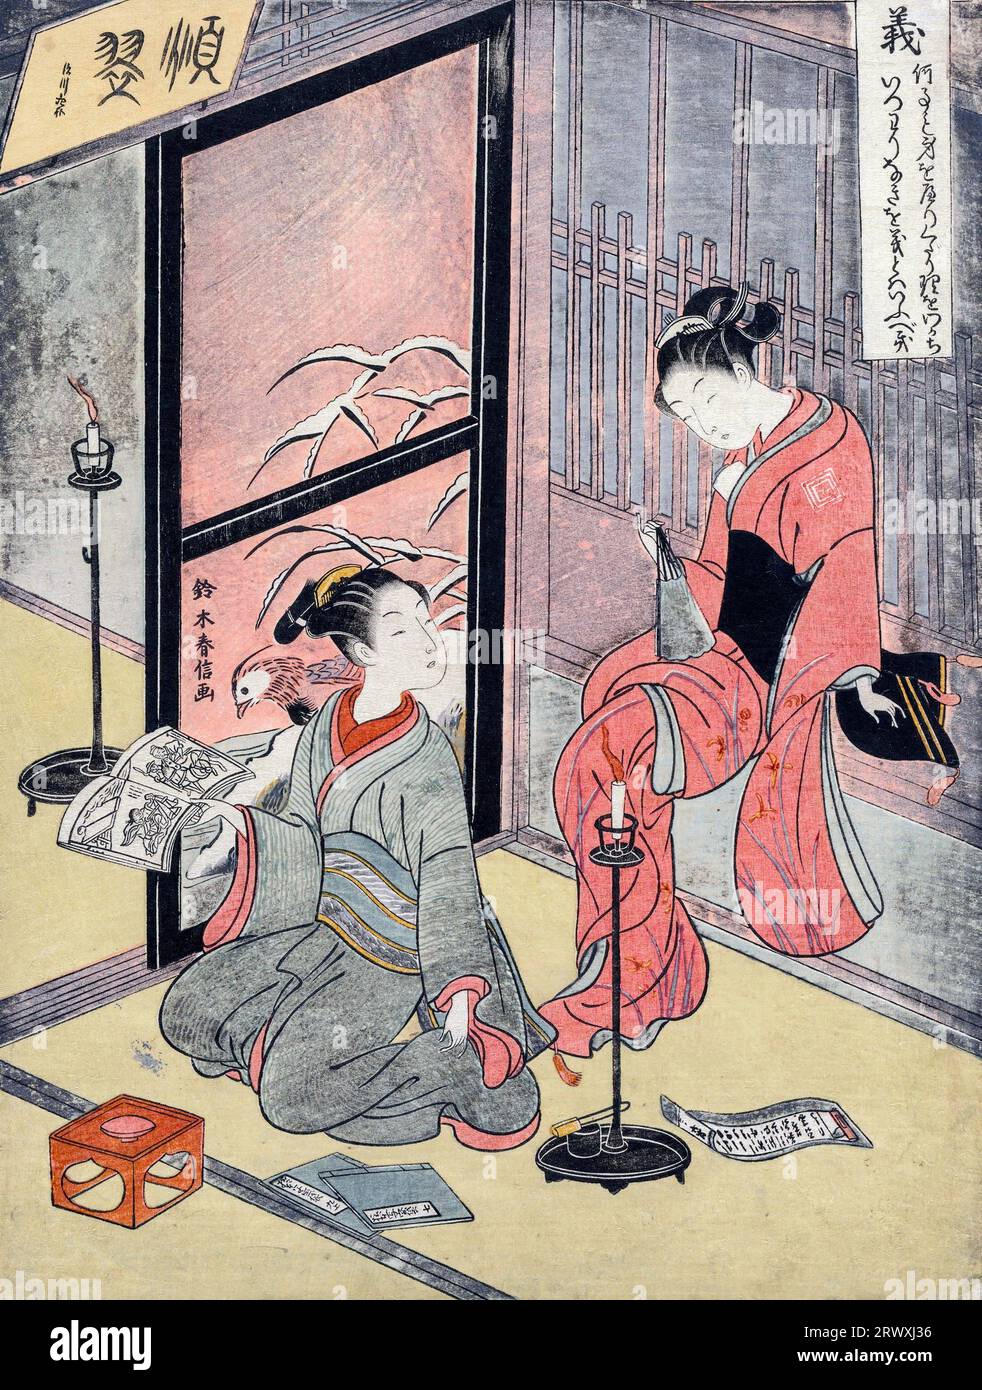 Droiture, à partir des cinq vertus de Suzuki Harunobu (c. 1725-1770), période edo, estampe sur bois couleur, 1767 Banque D'Images